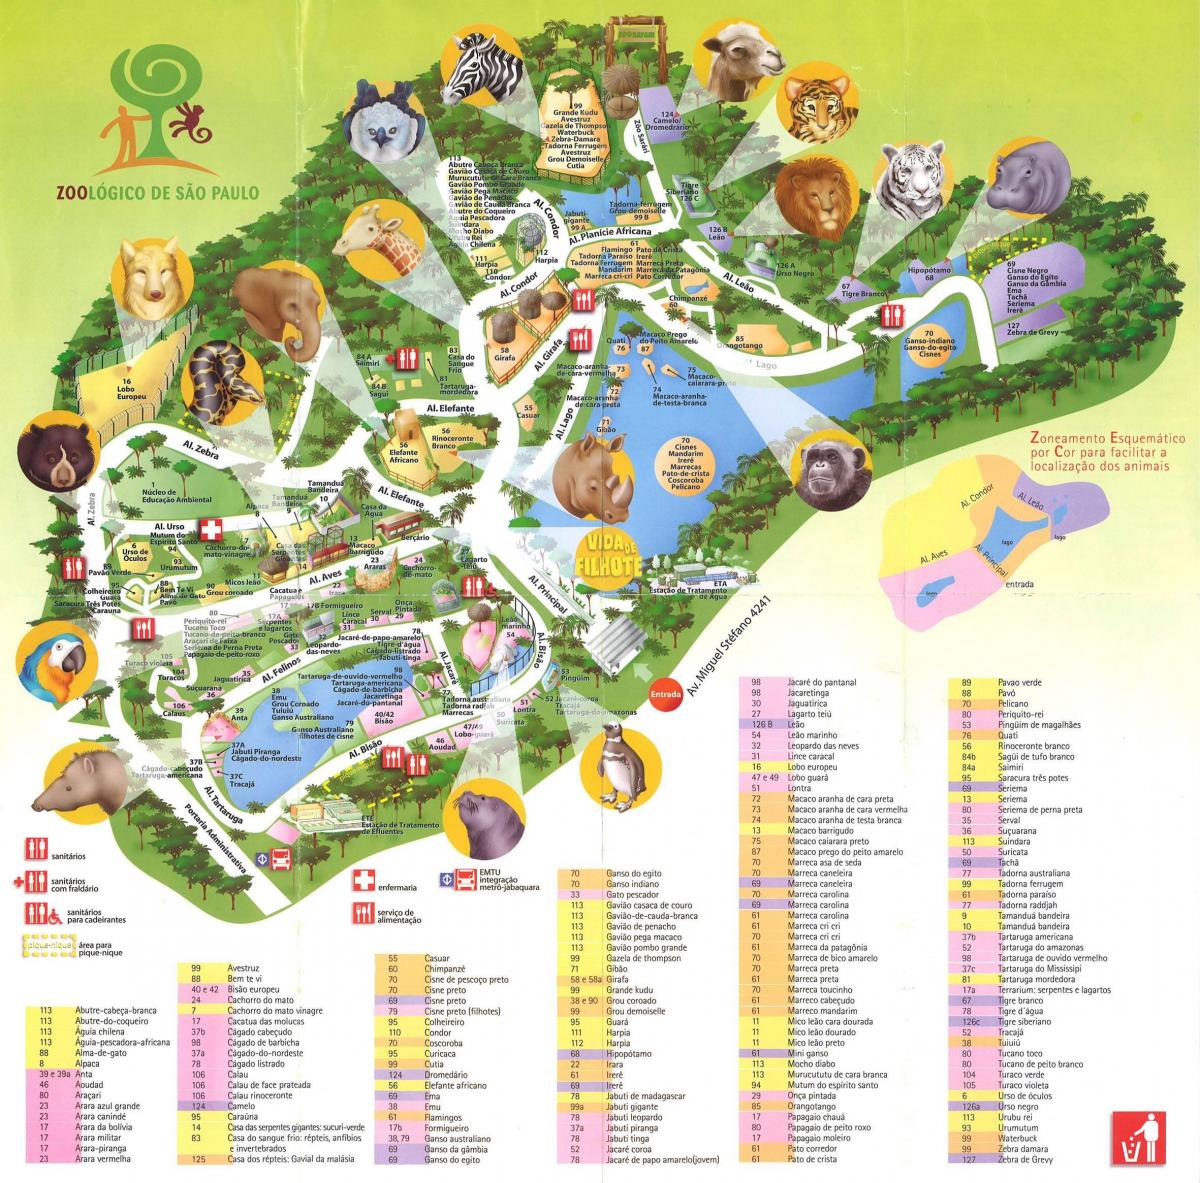 Χάρτης της zoological park του Σάο Πάολο